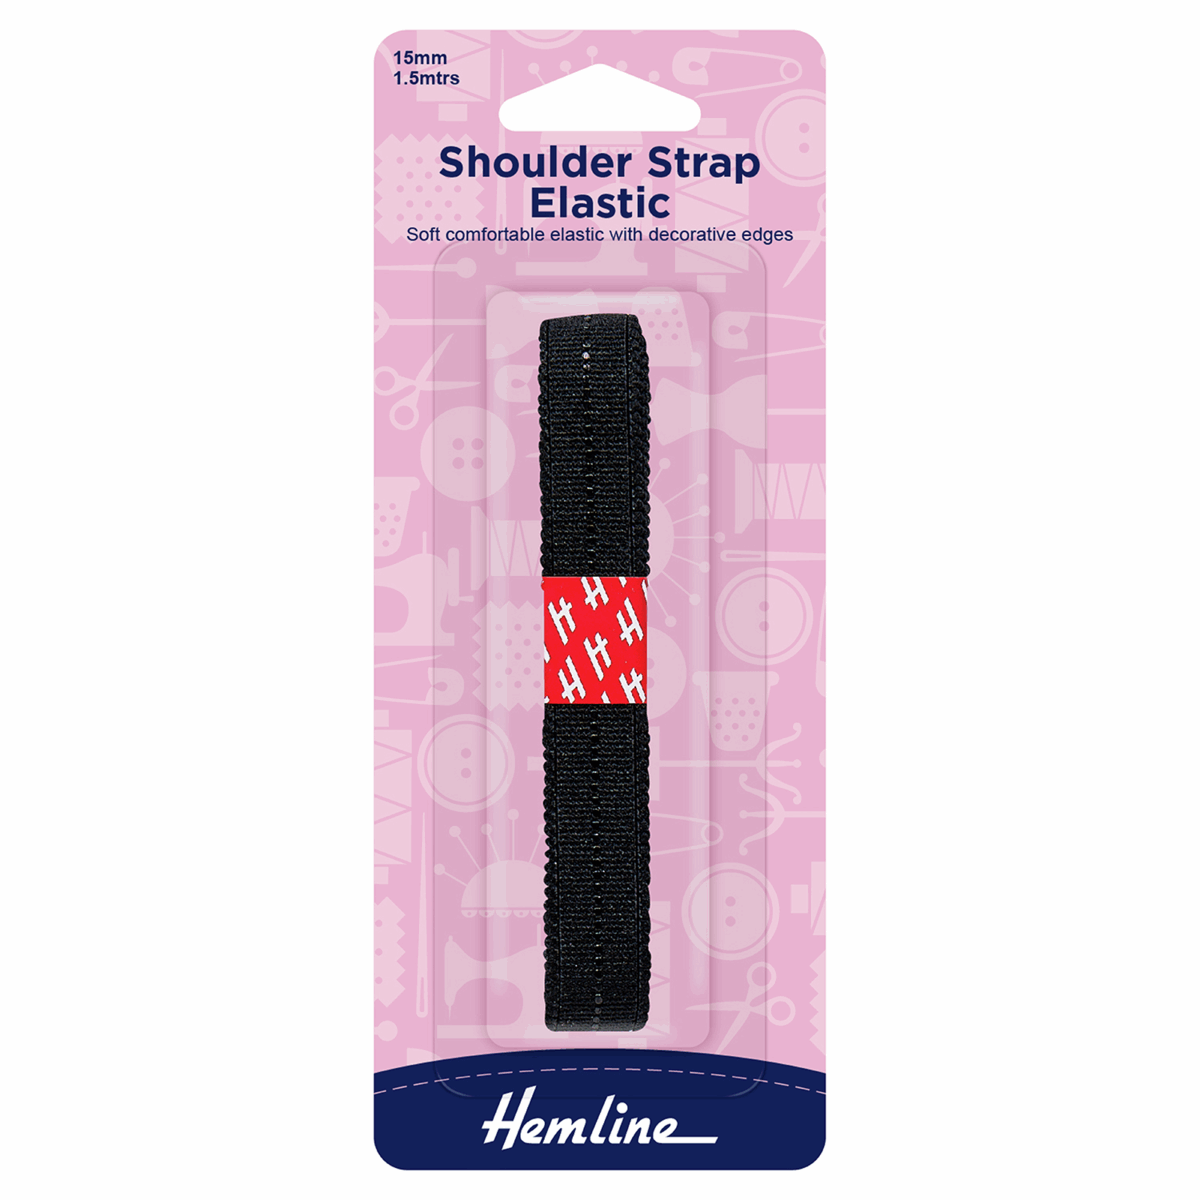 Shoulder Strap Elastic - Black 1.5mtr x 15mm